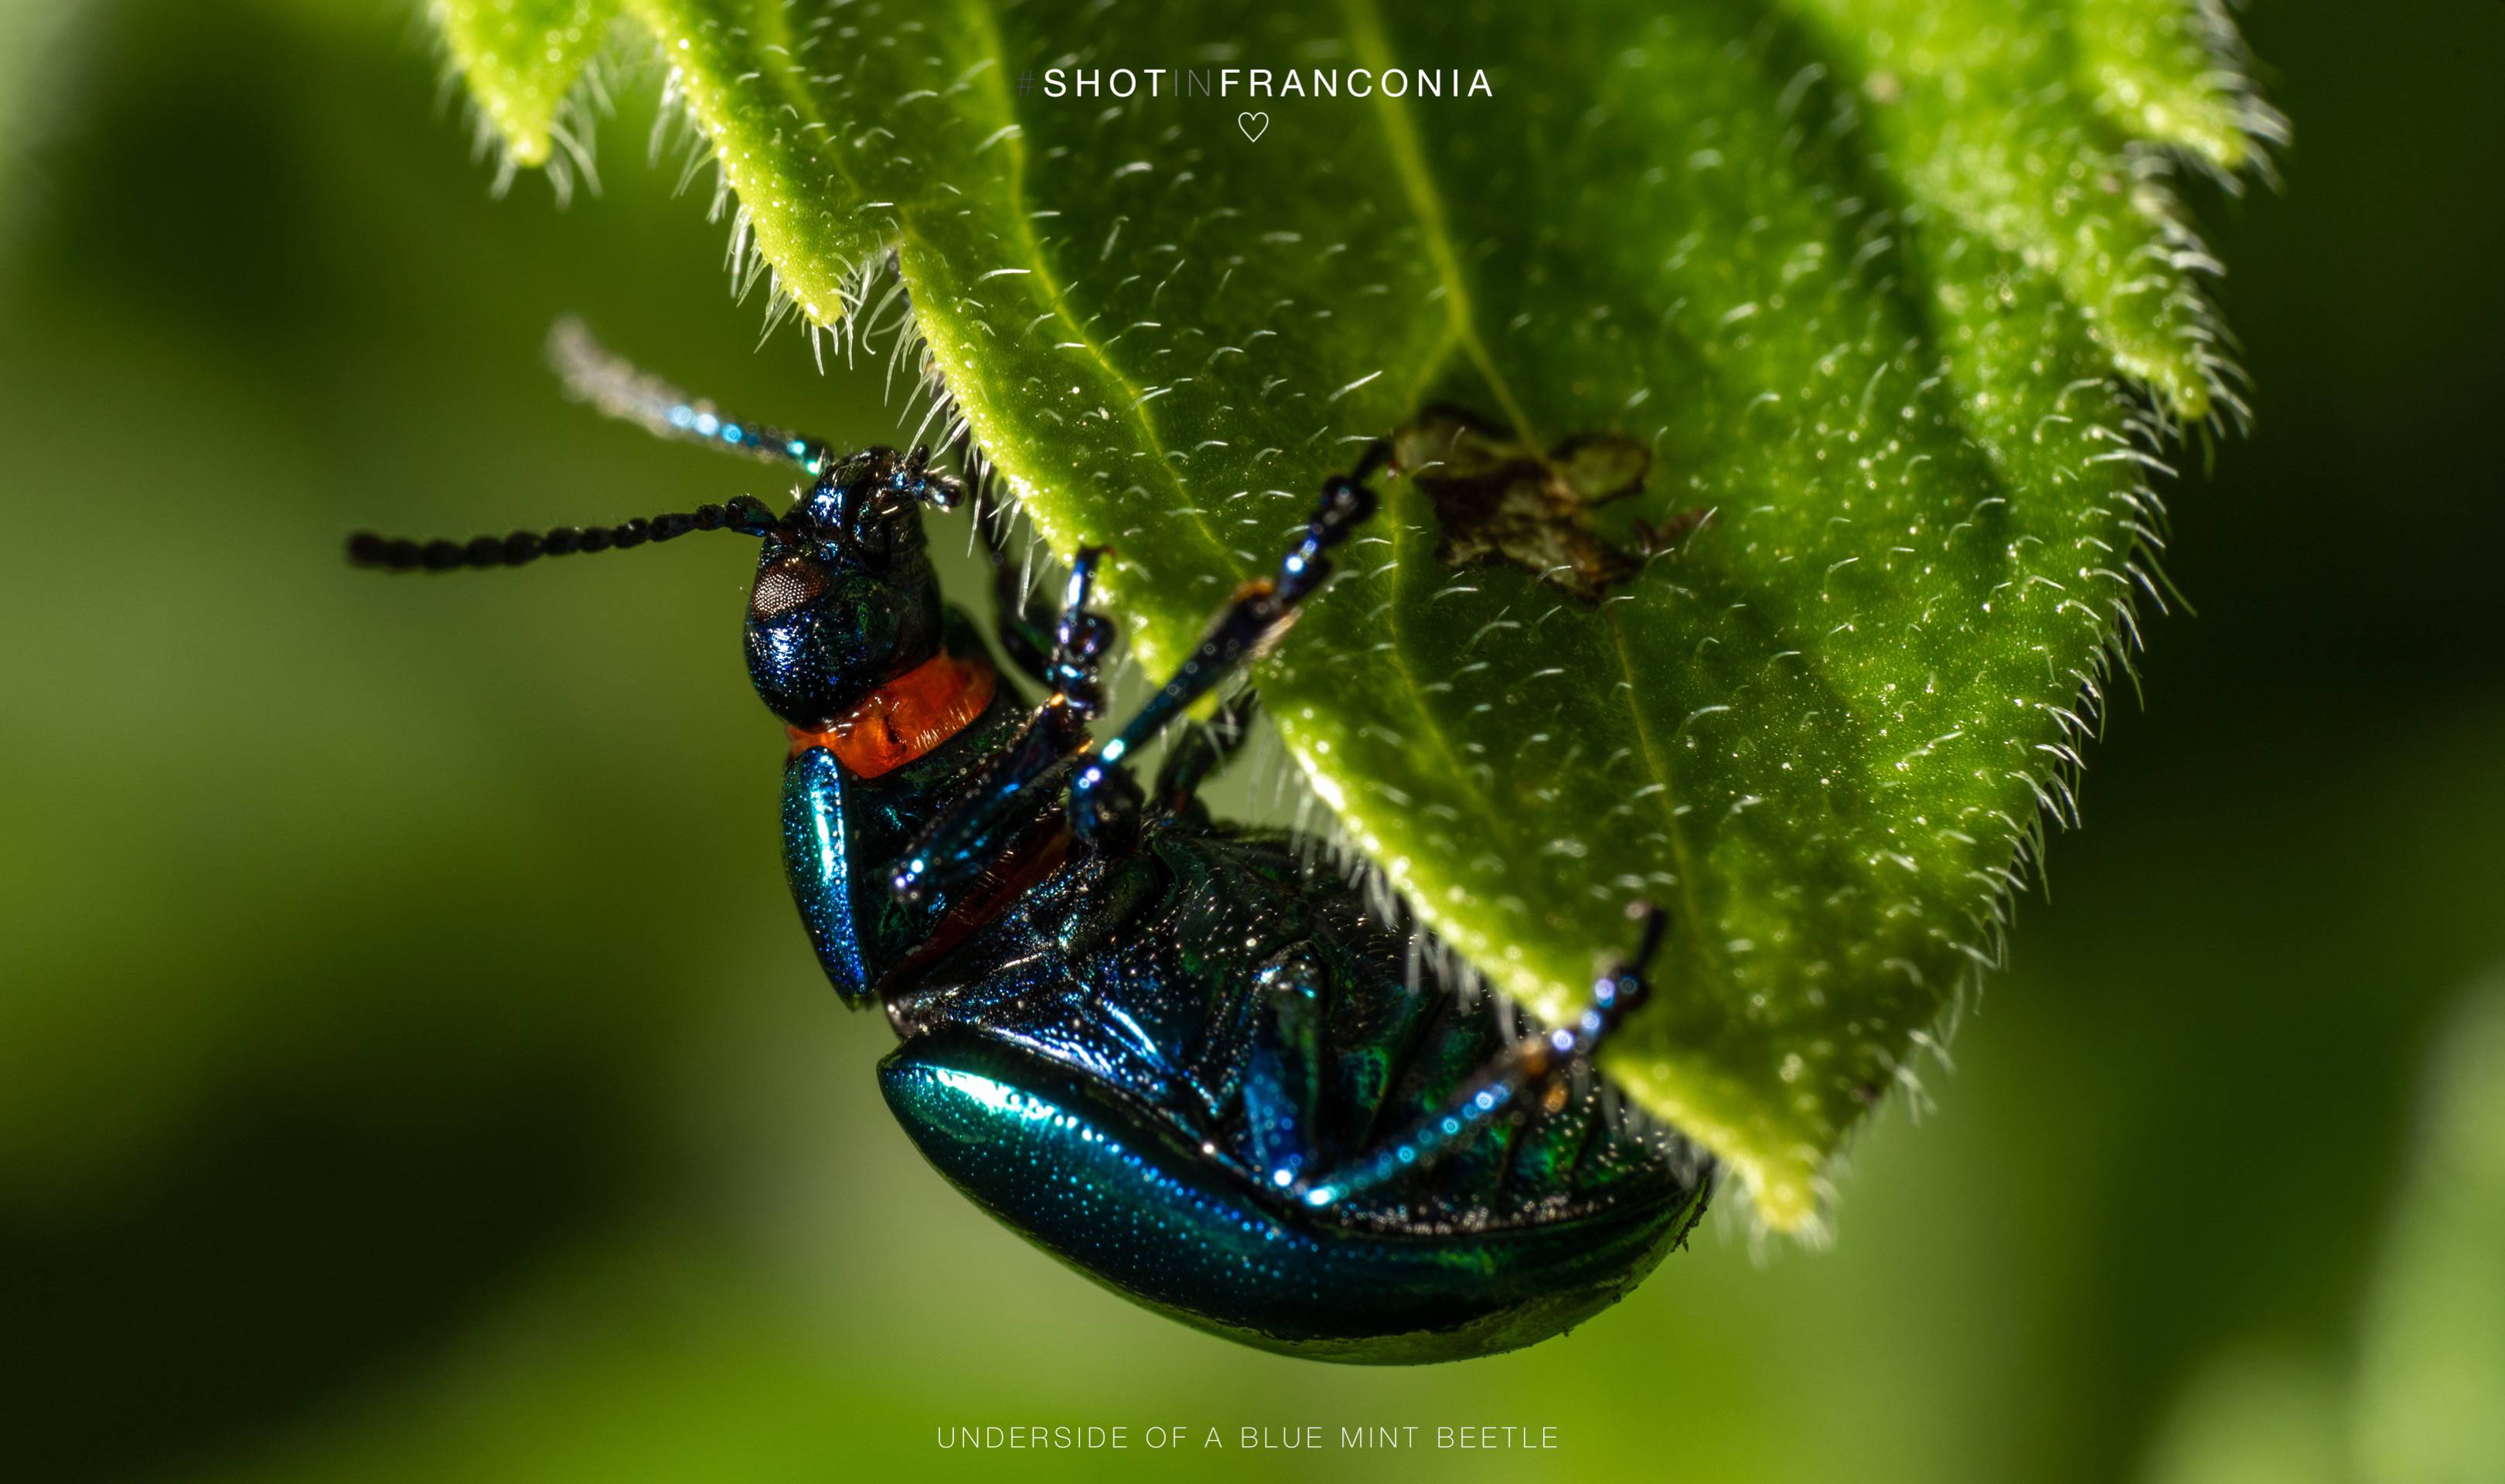 Underside of a blue mint beetle